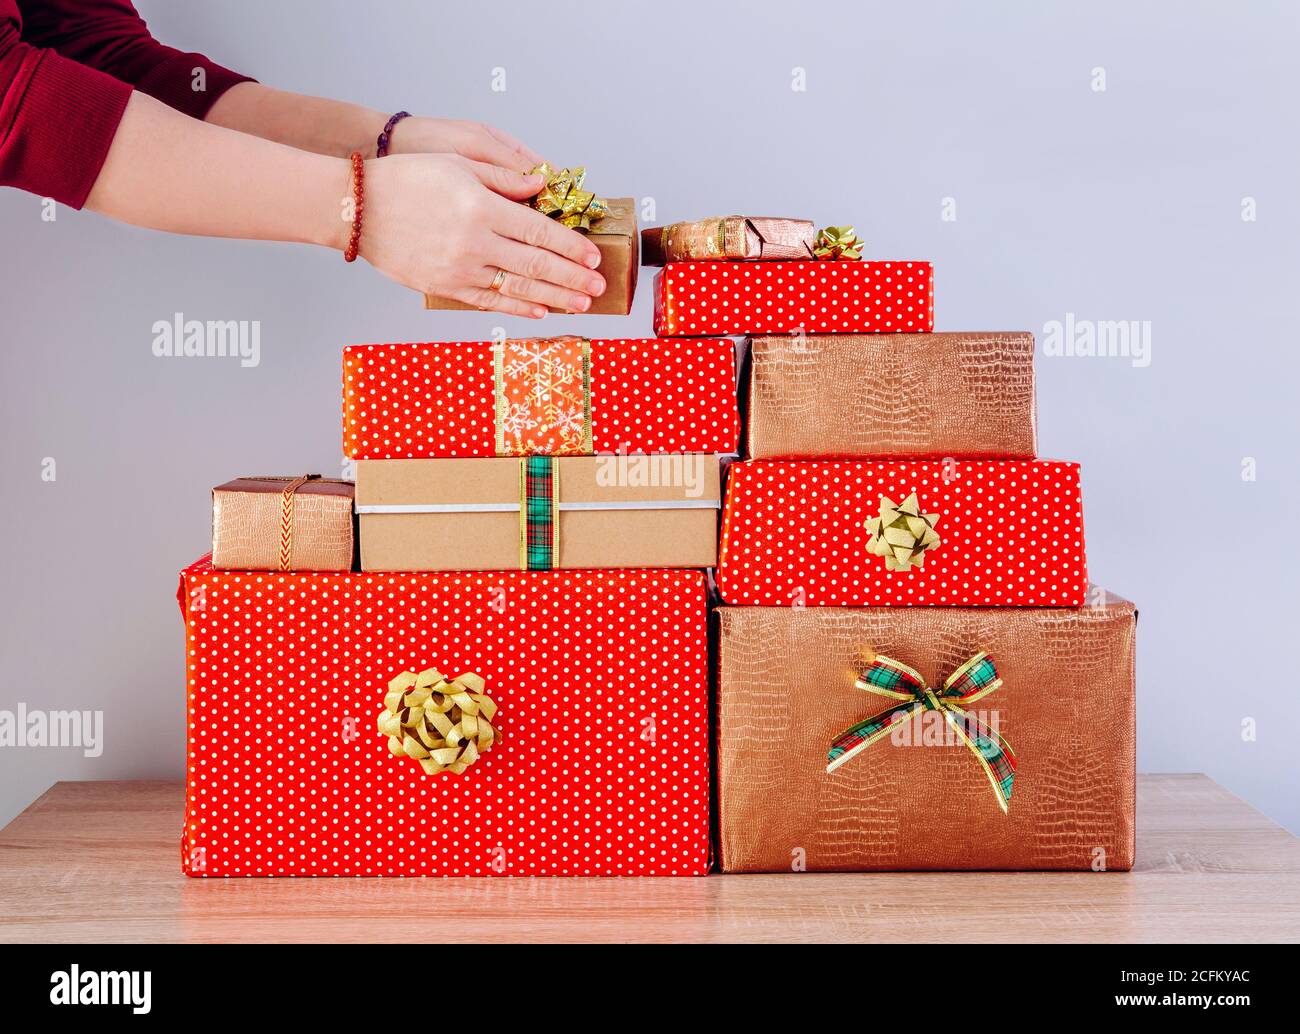 Detailansicht der Frau Person Hände stapeln Weihnachtsgeschenke in einem Stapel. Vorbereitung für Weihnachten Konzept. Stockfoto